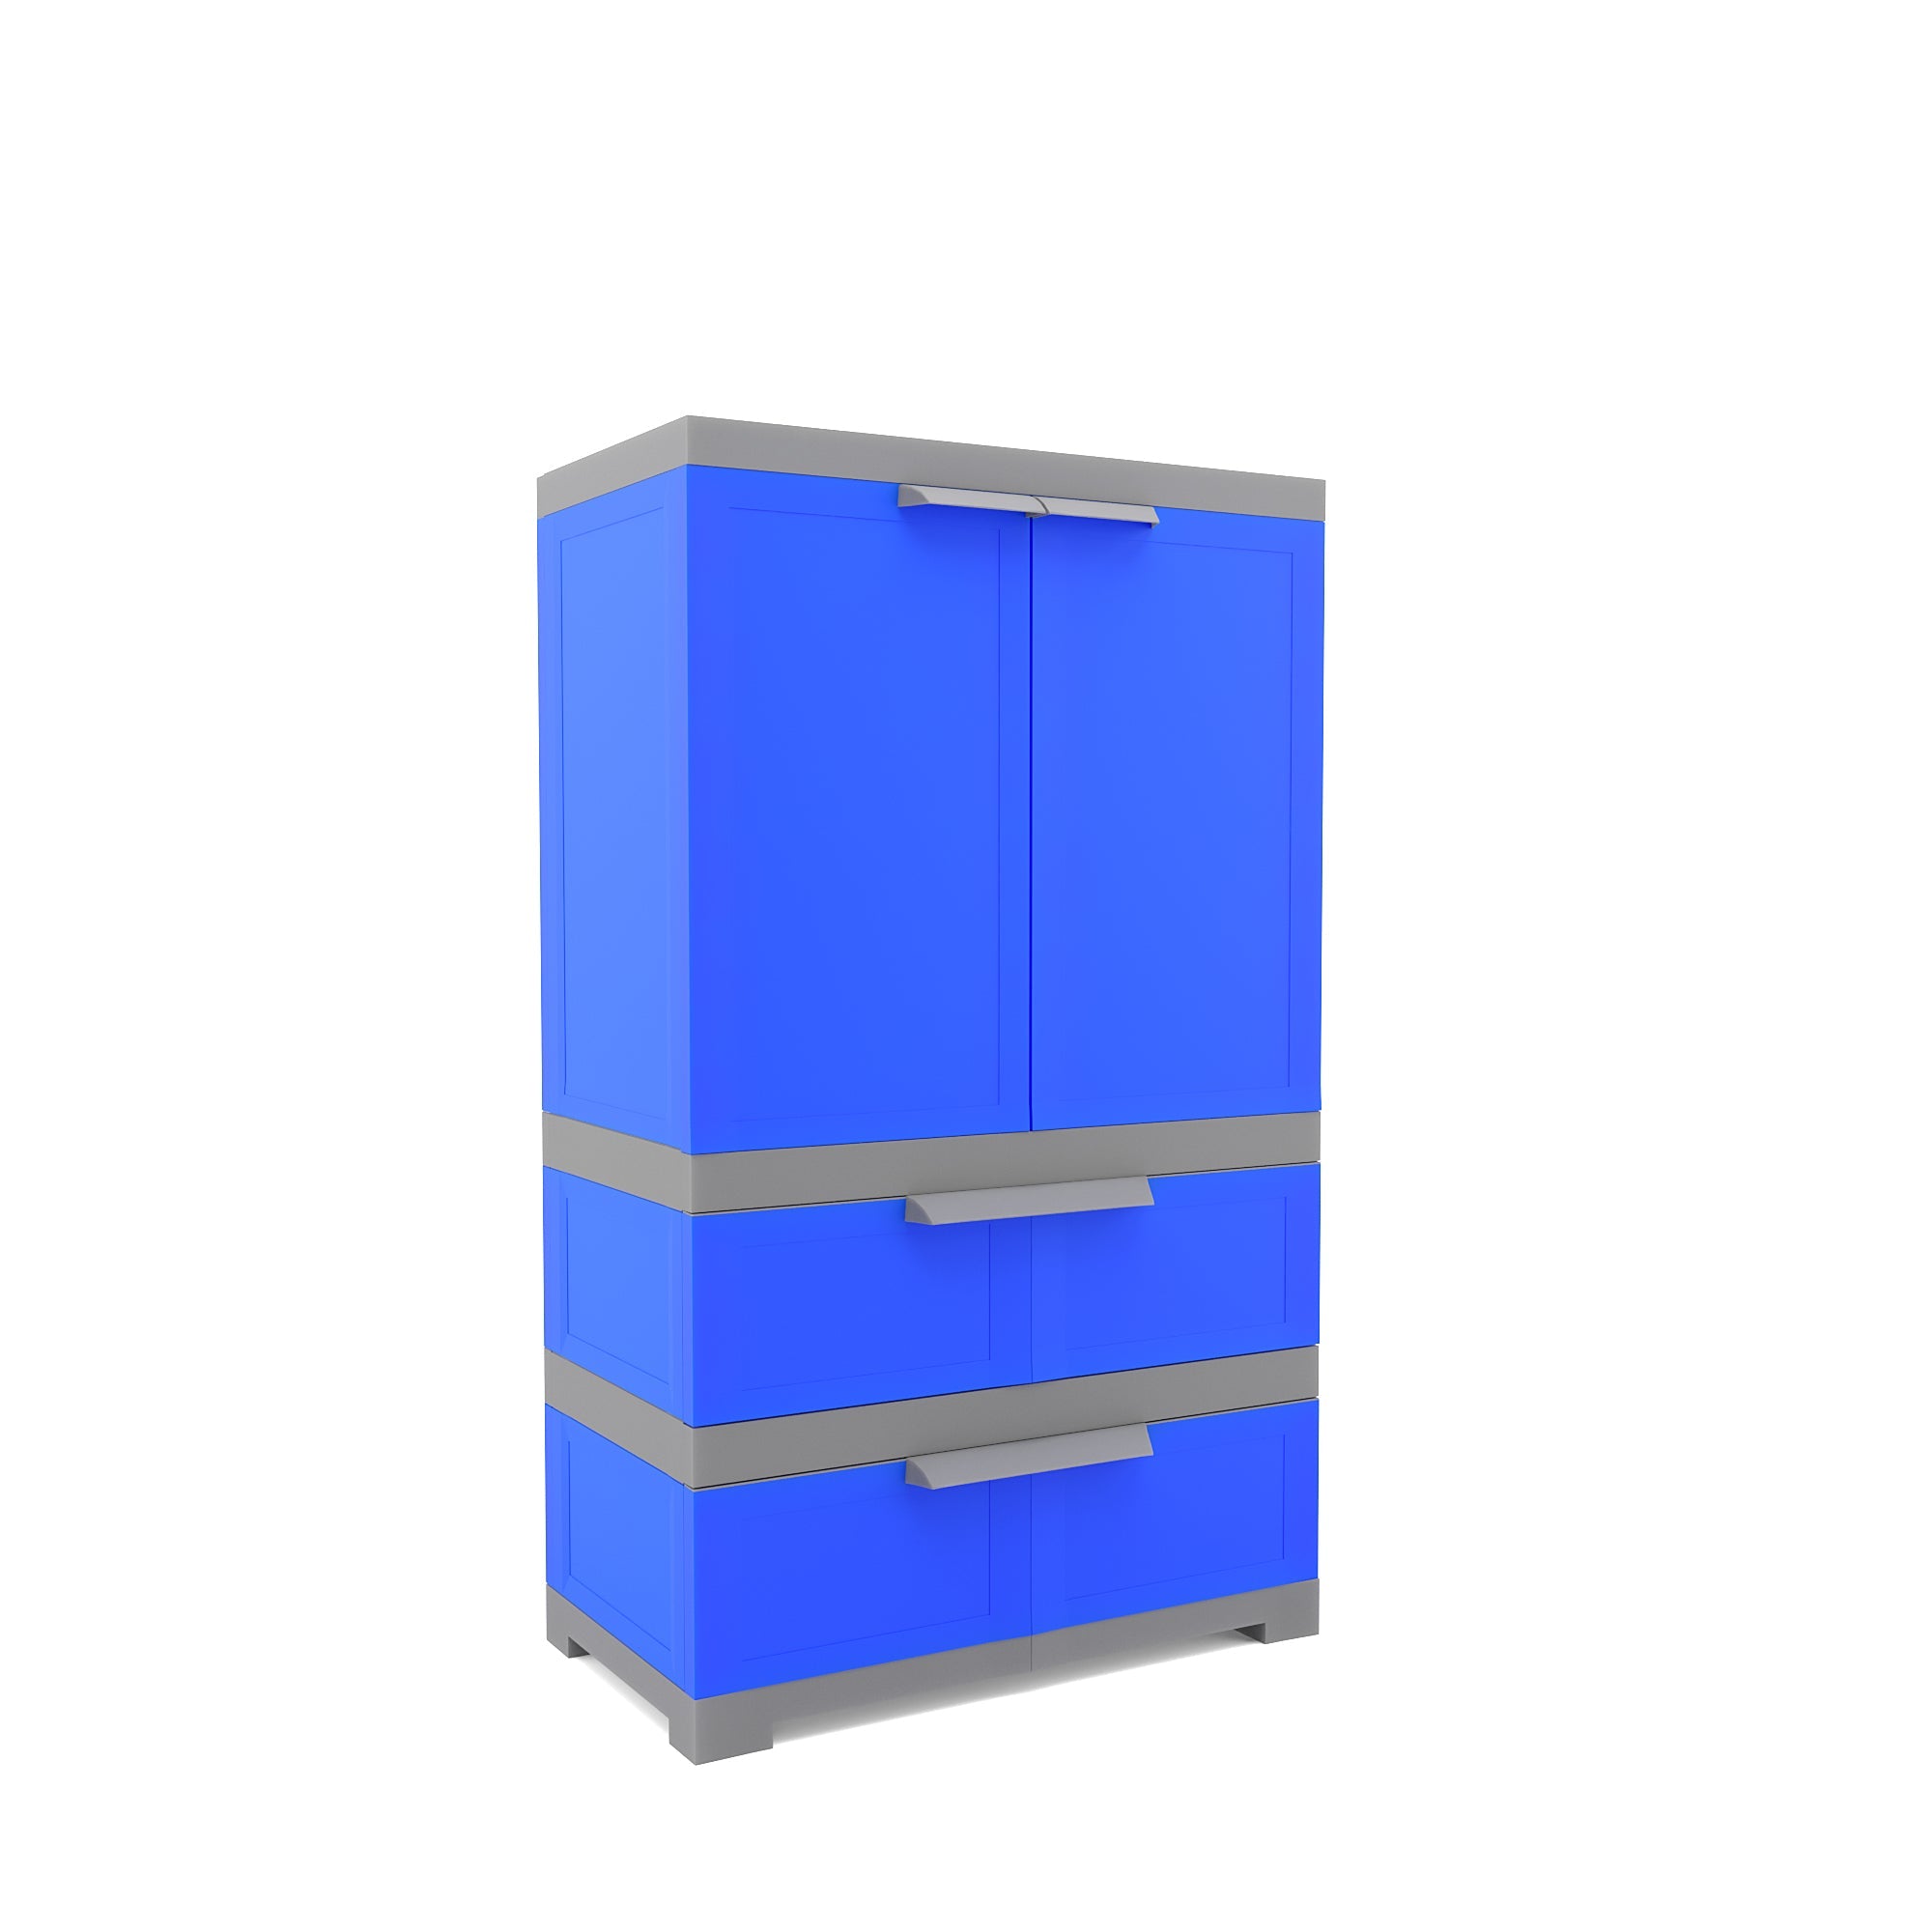 Nilkamal Freedom FMDR 2B Plastic Storage Cabinet with 2 Drawer (Deep Blue/Grey)